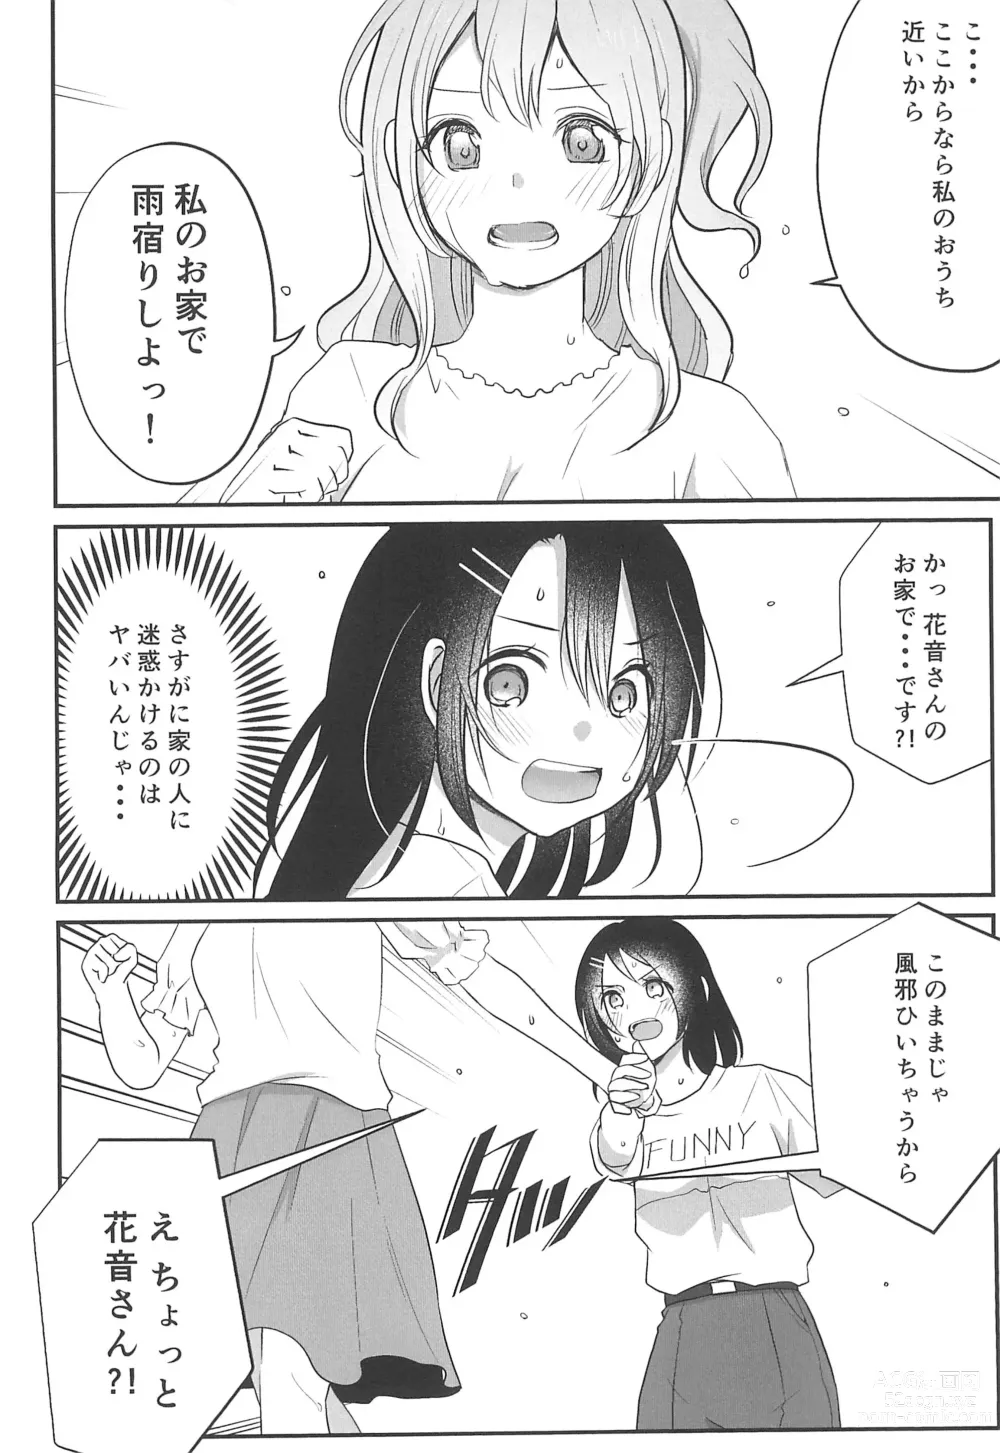 Page 6 of doujinshi Kitto Sonna Natsu no Hi no Omoide